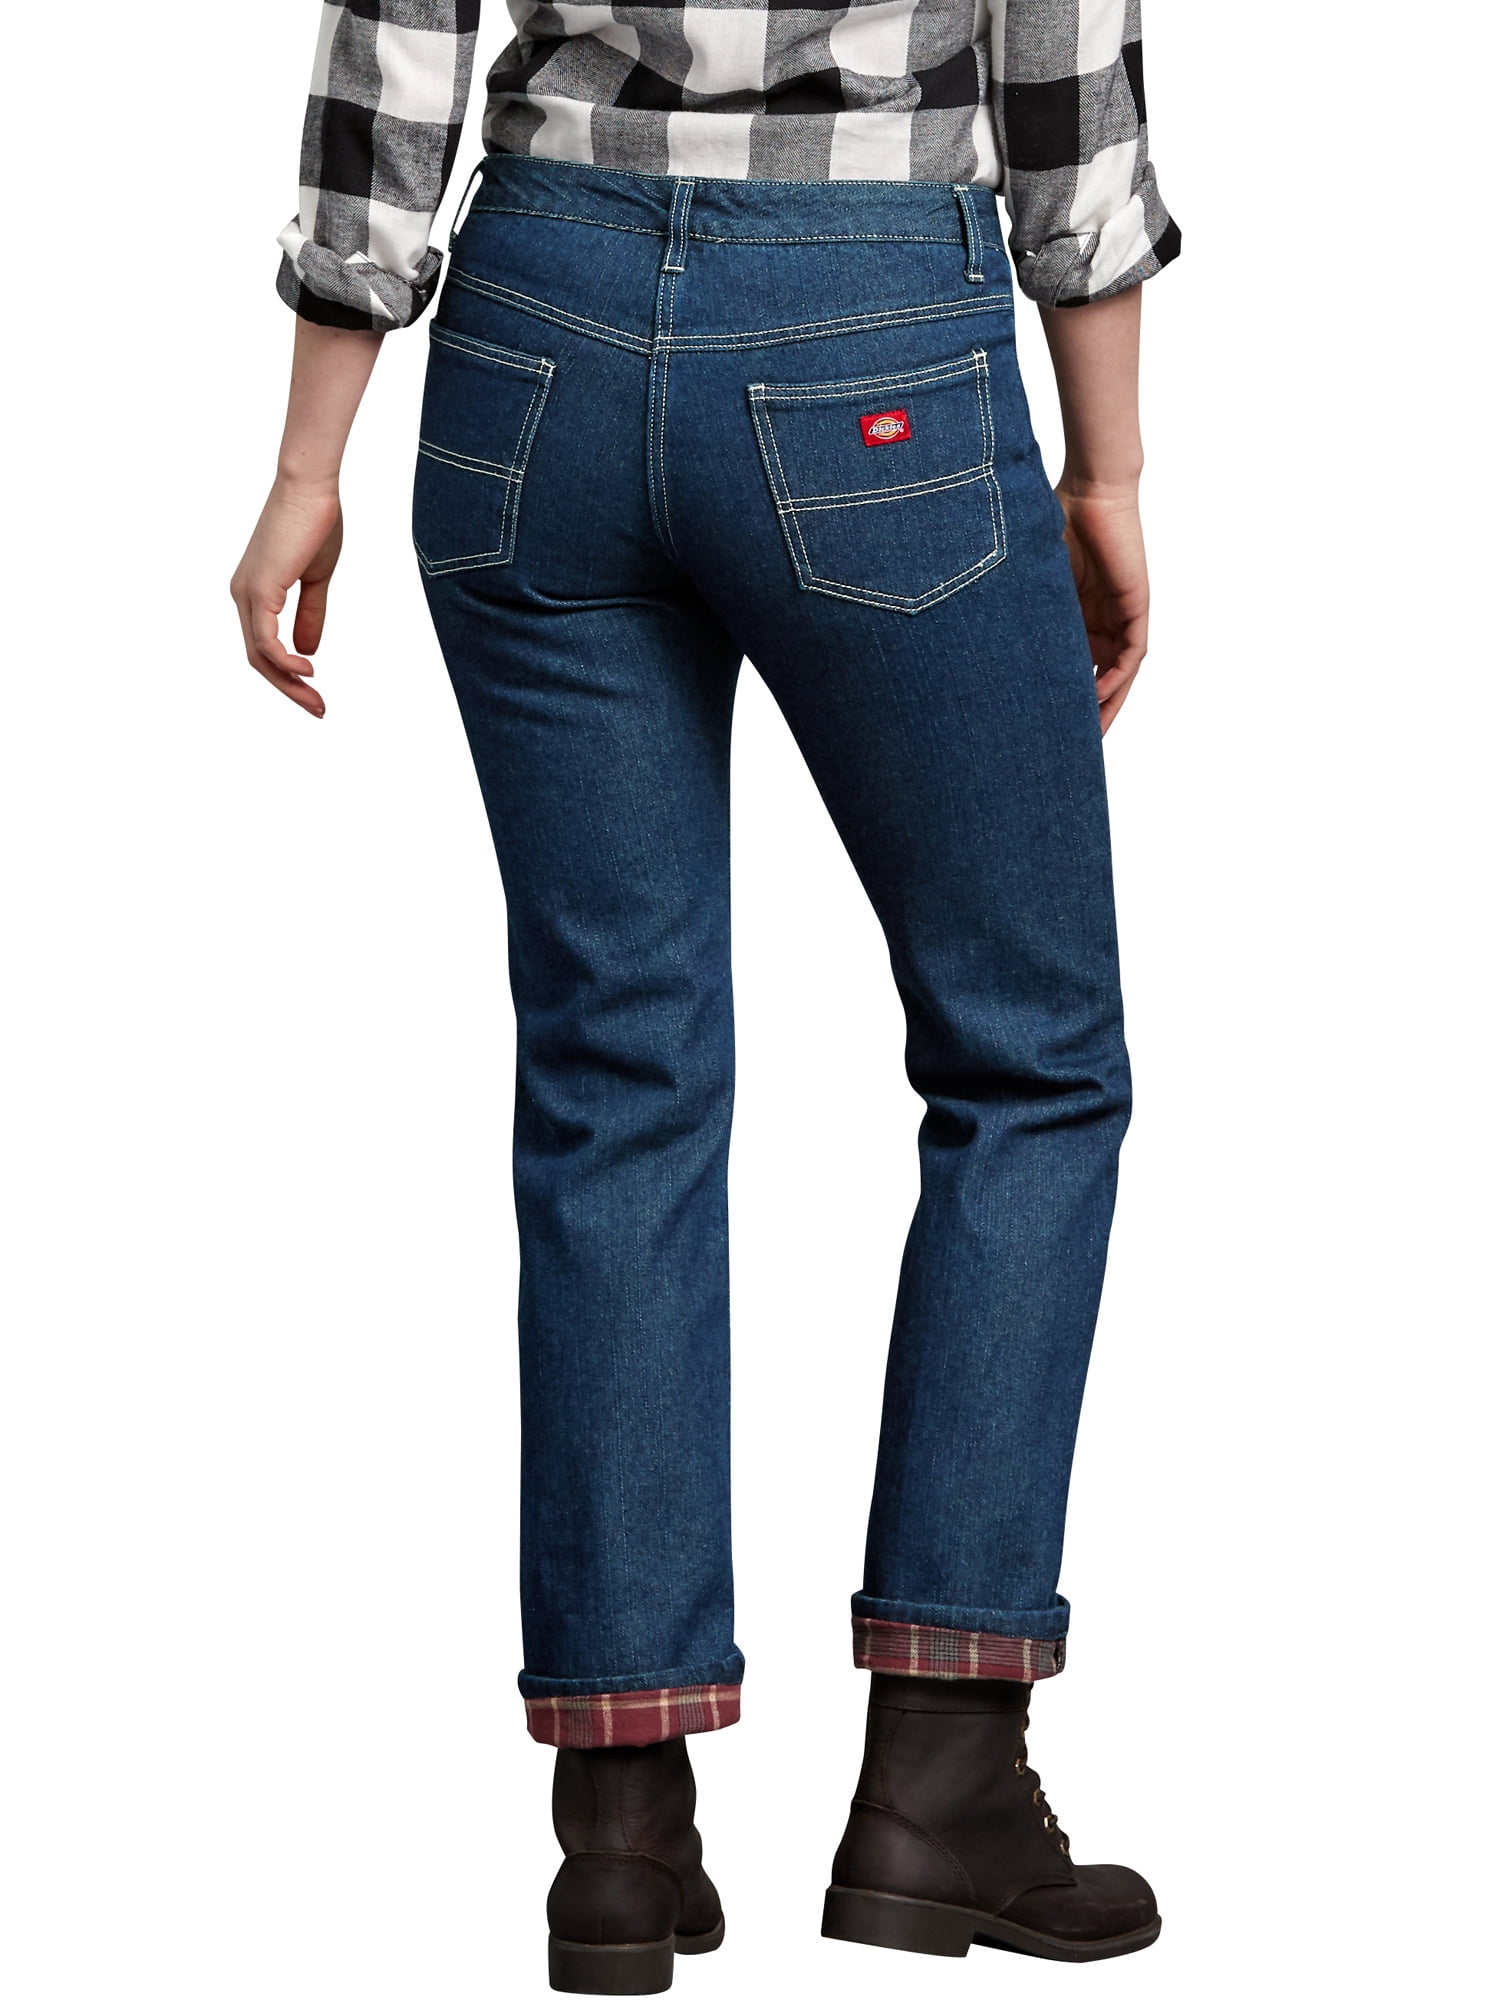 womens flannel lined jeans walmart